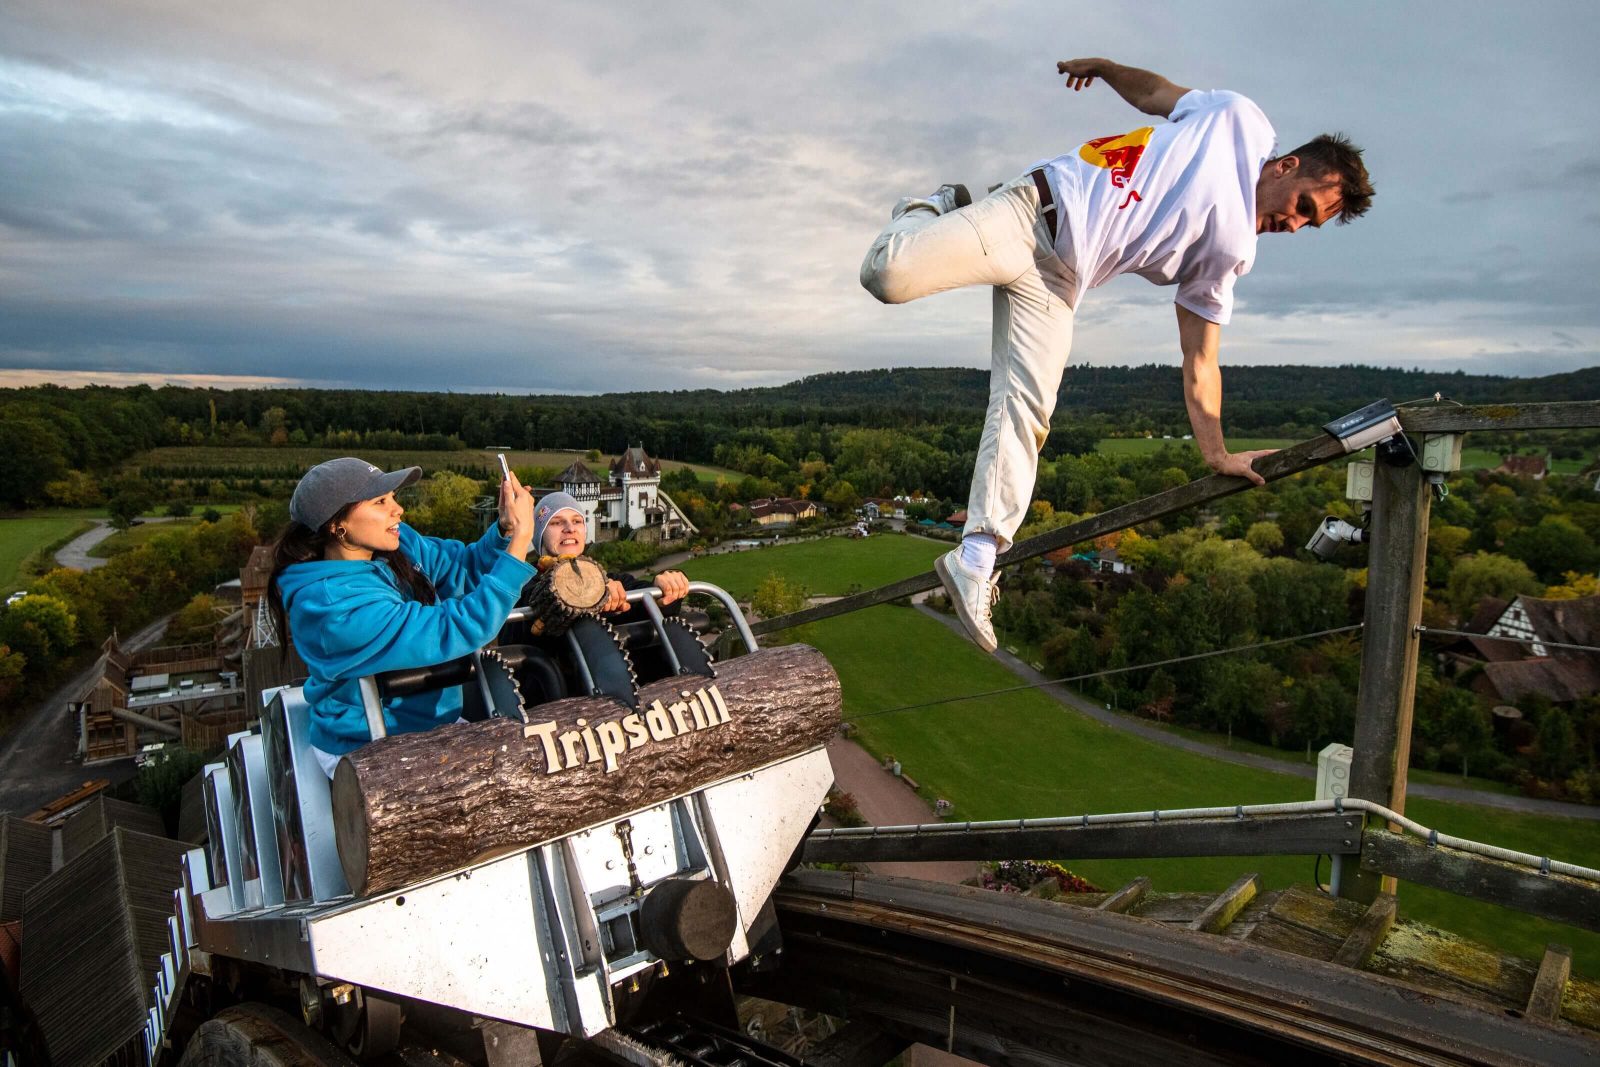 Majstor parkoura: Jason Paul izvodio akrobacije na džinovskom drvenom rollercoasteru, Life.ba